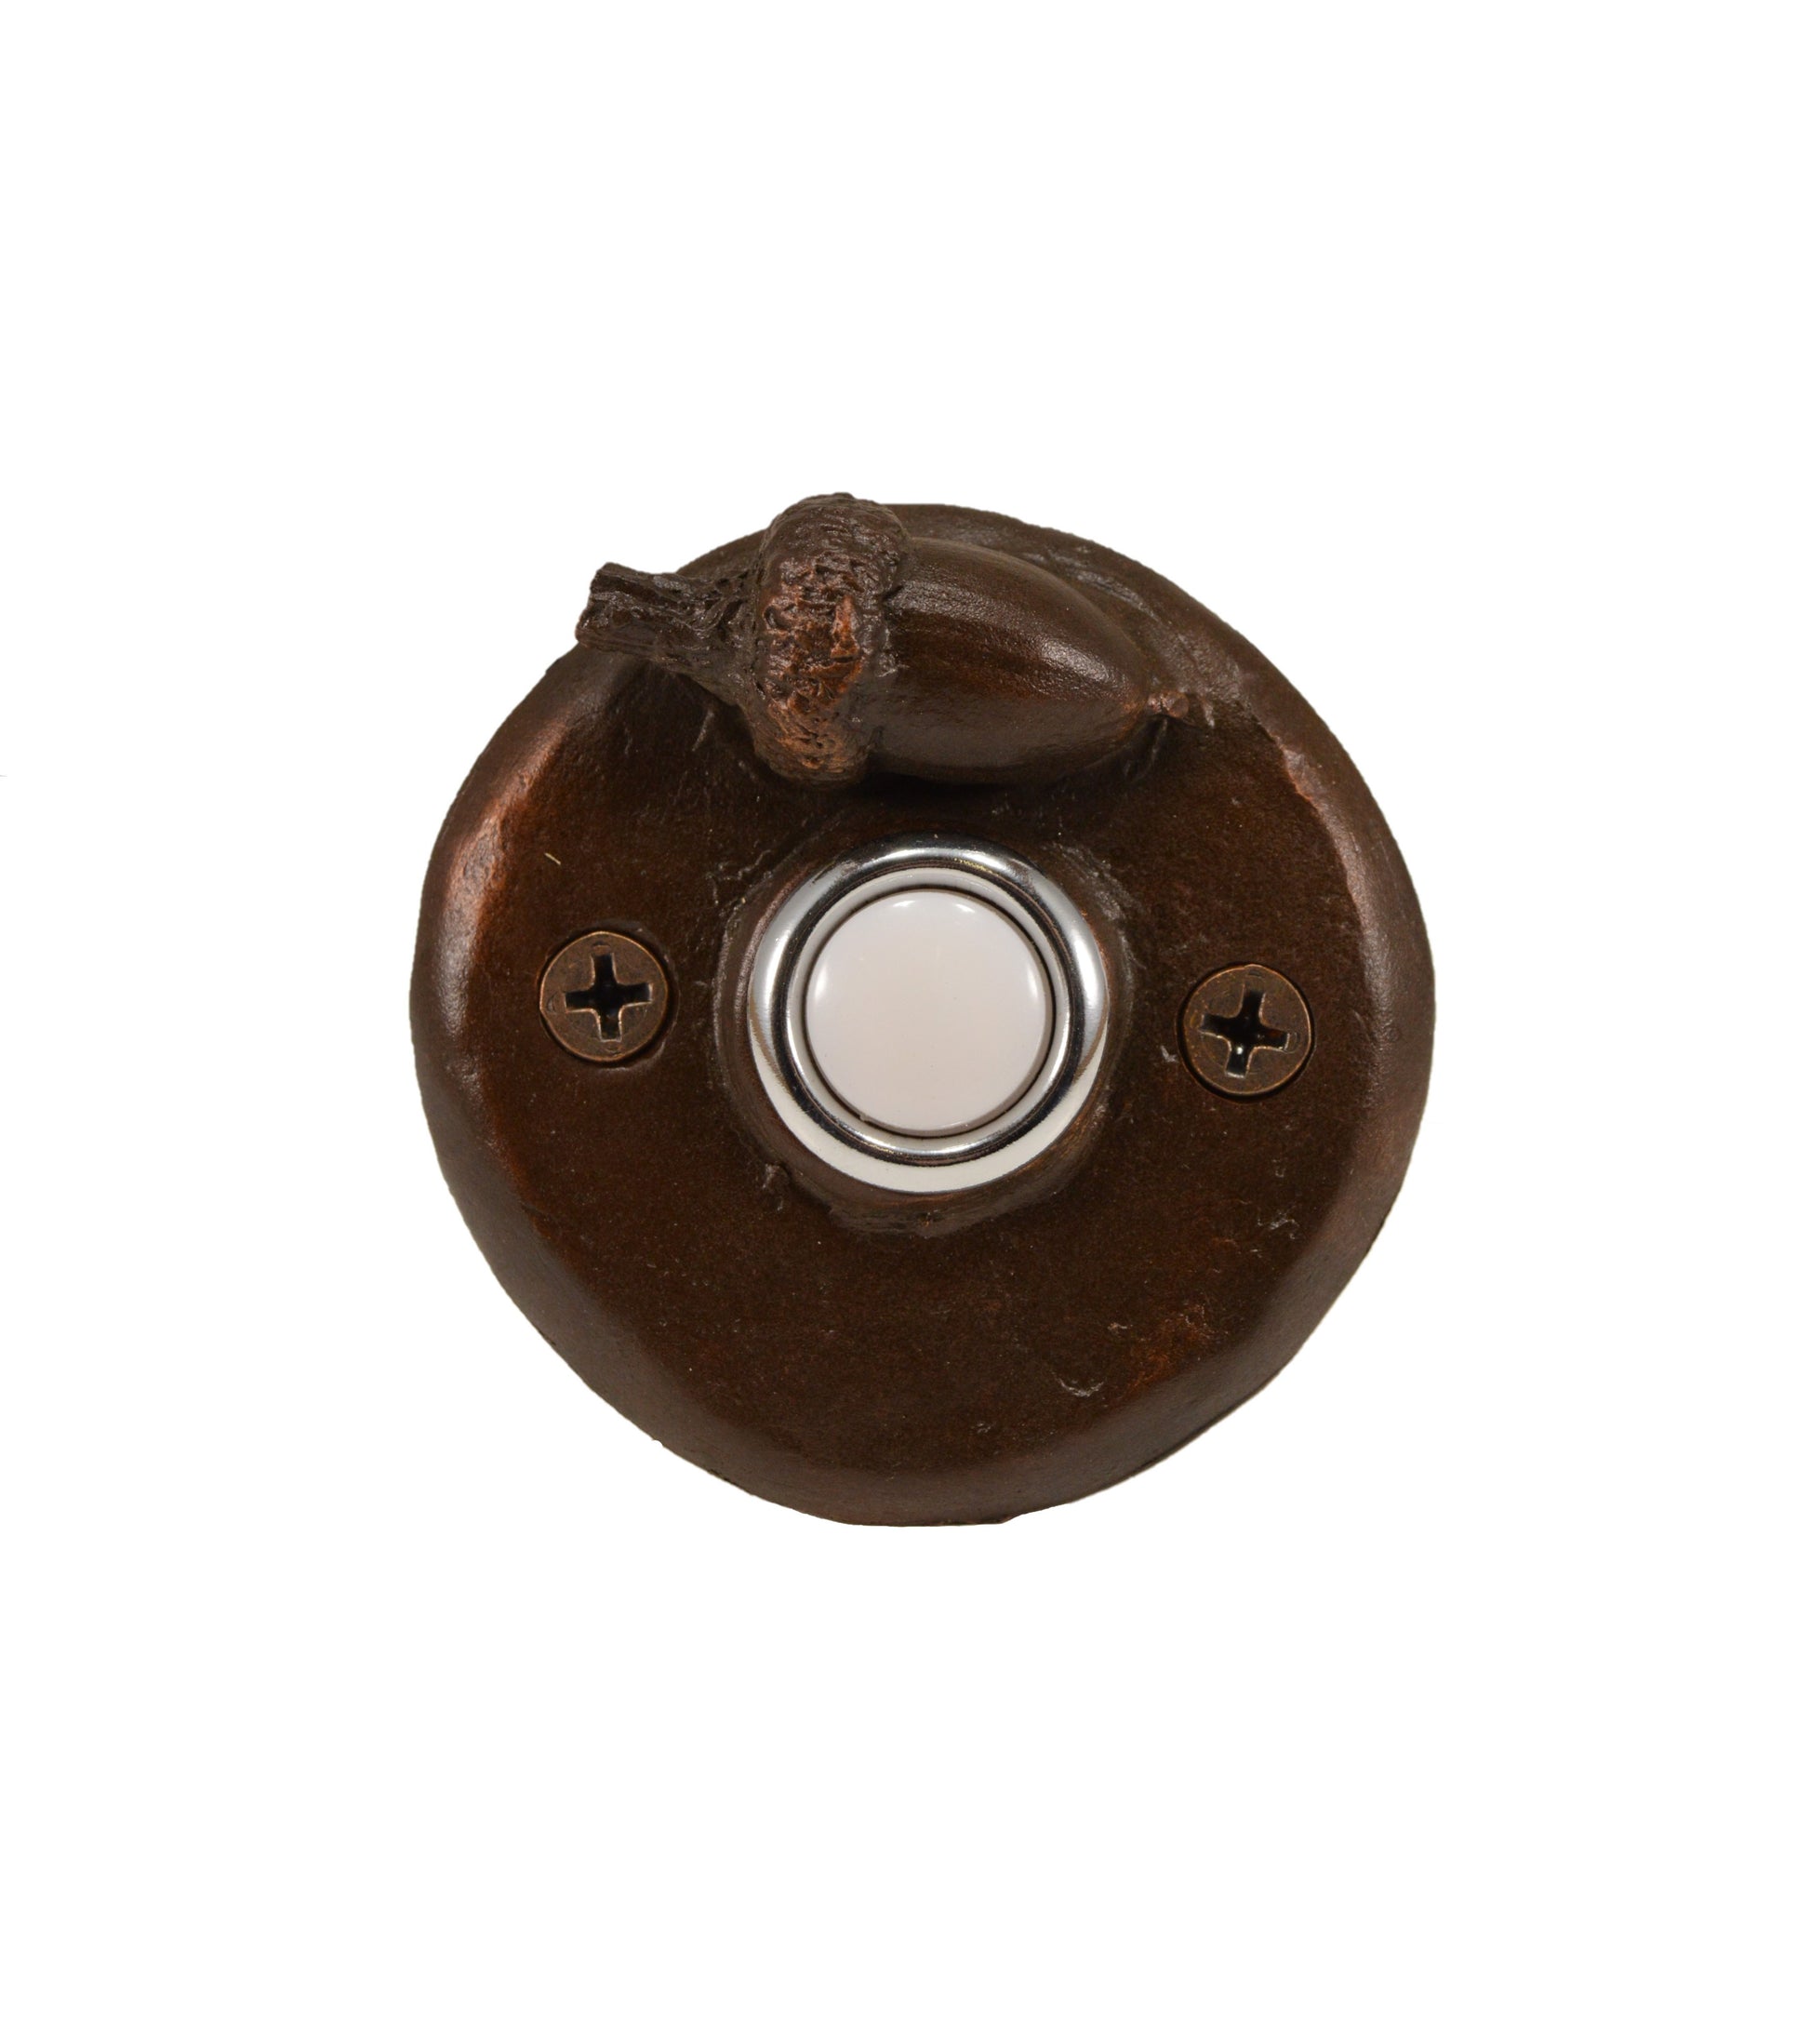 Round Doorbell with acorn